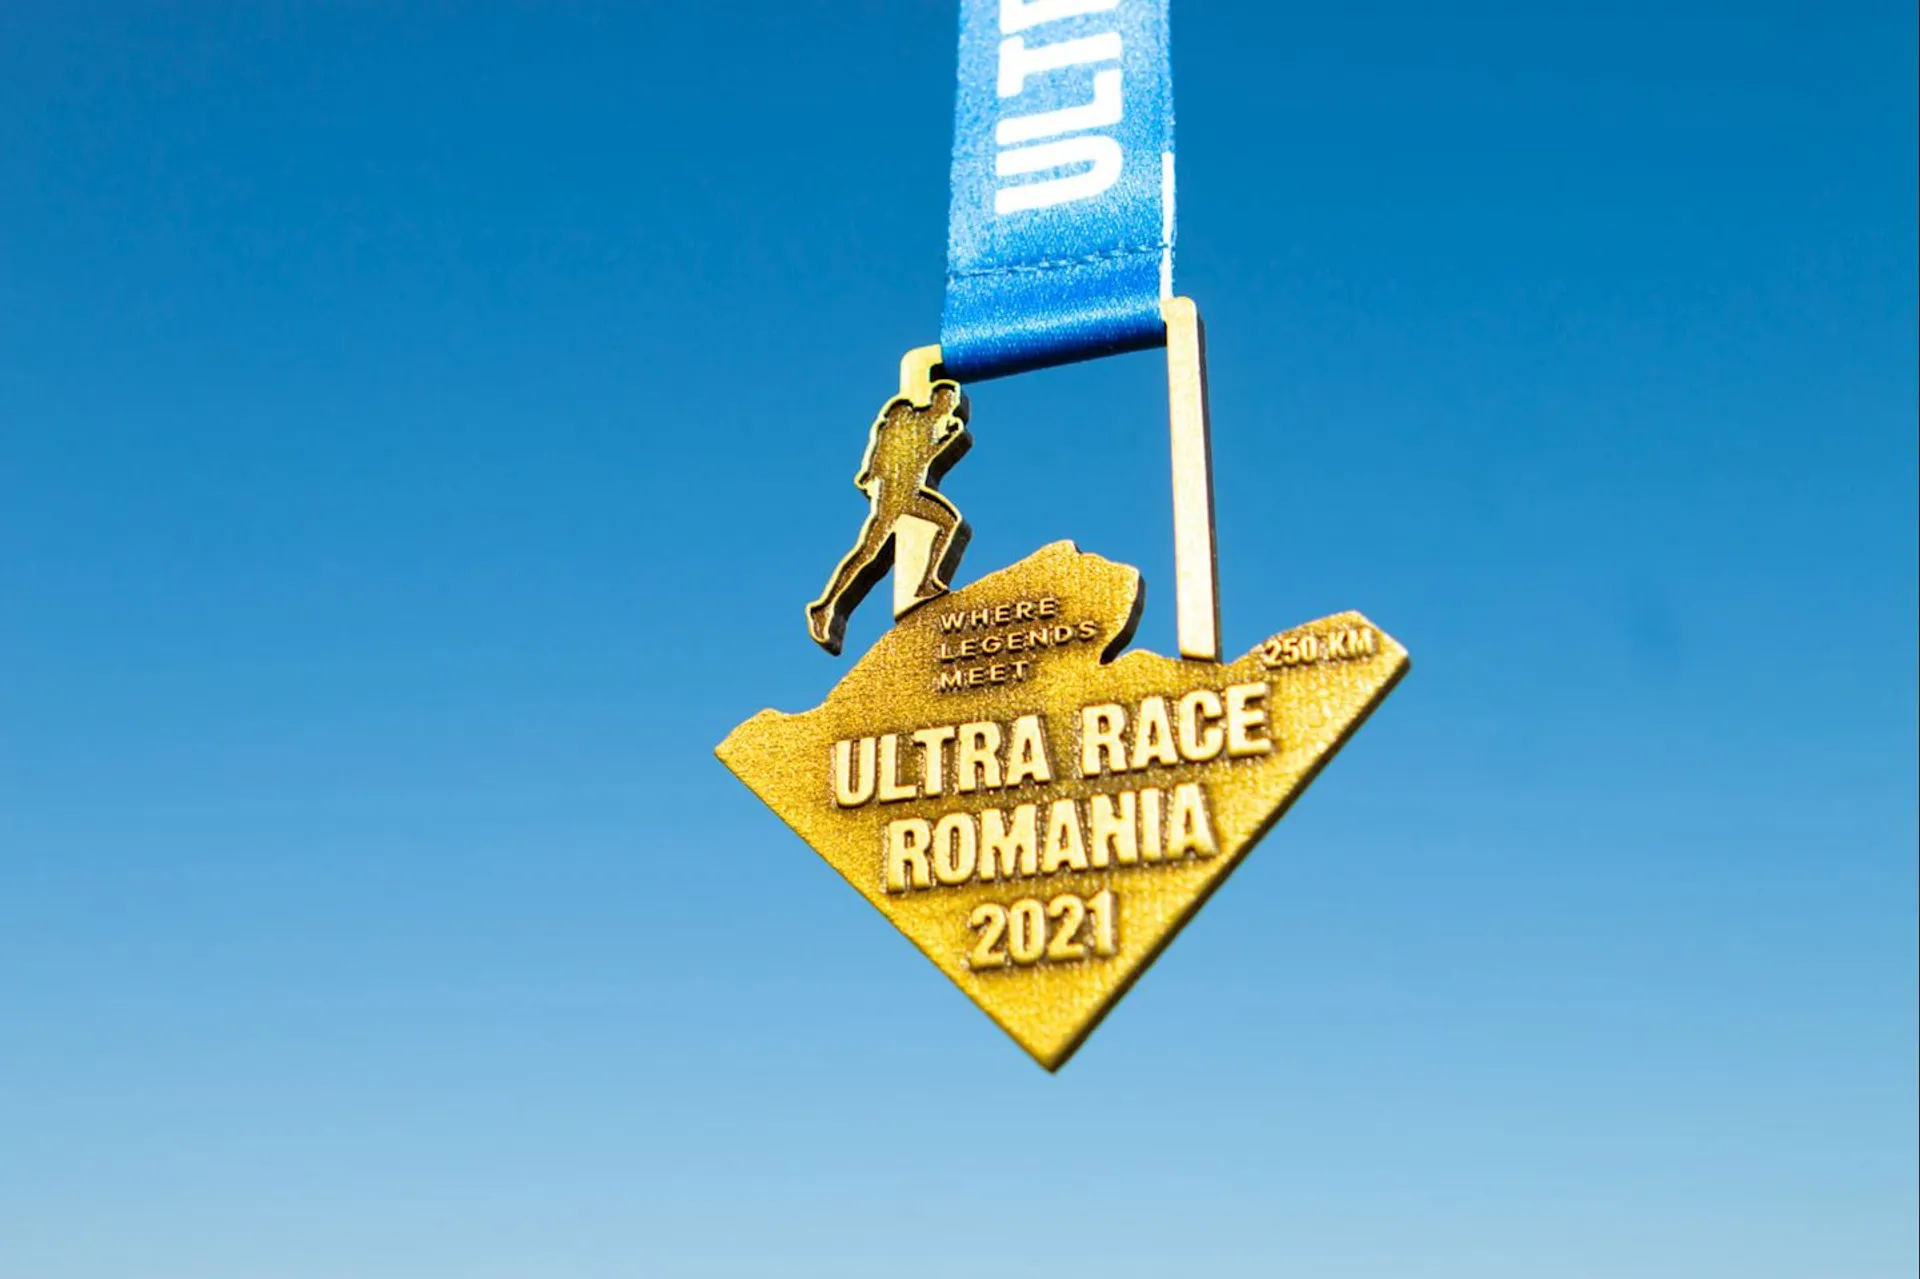 Ultra Race Romania